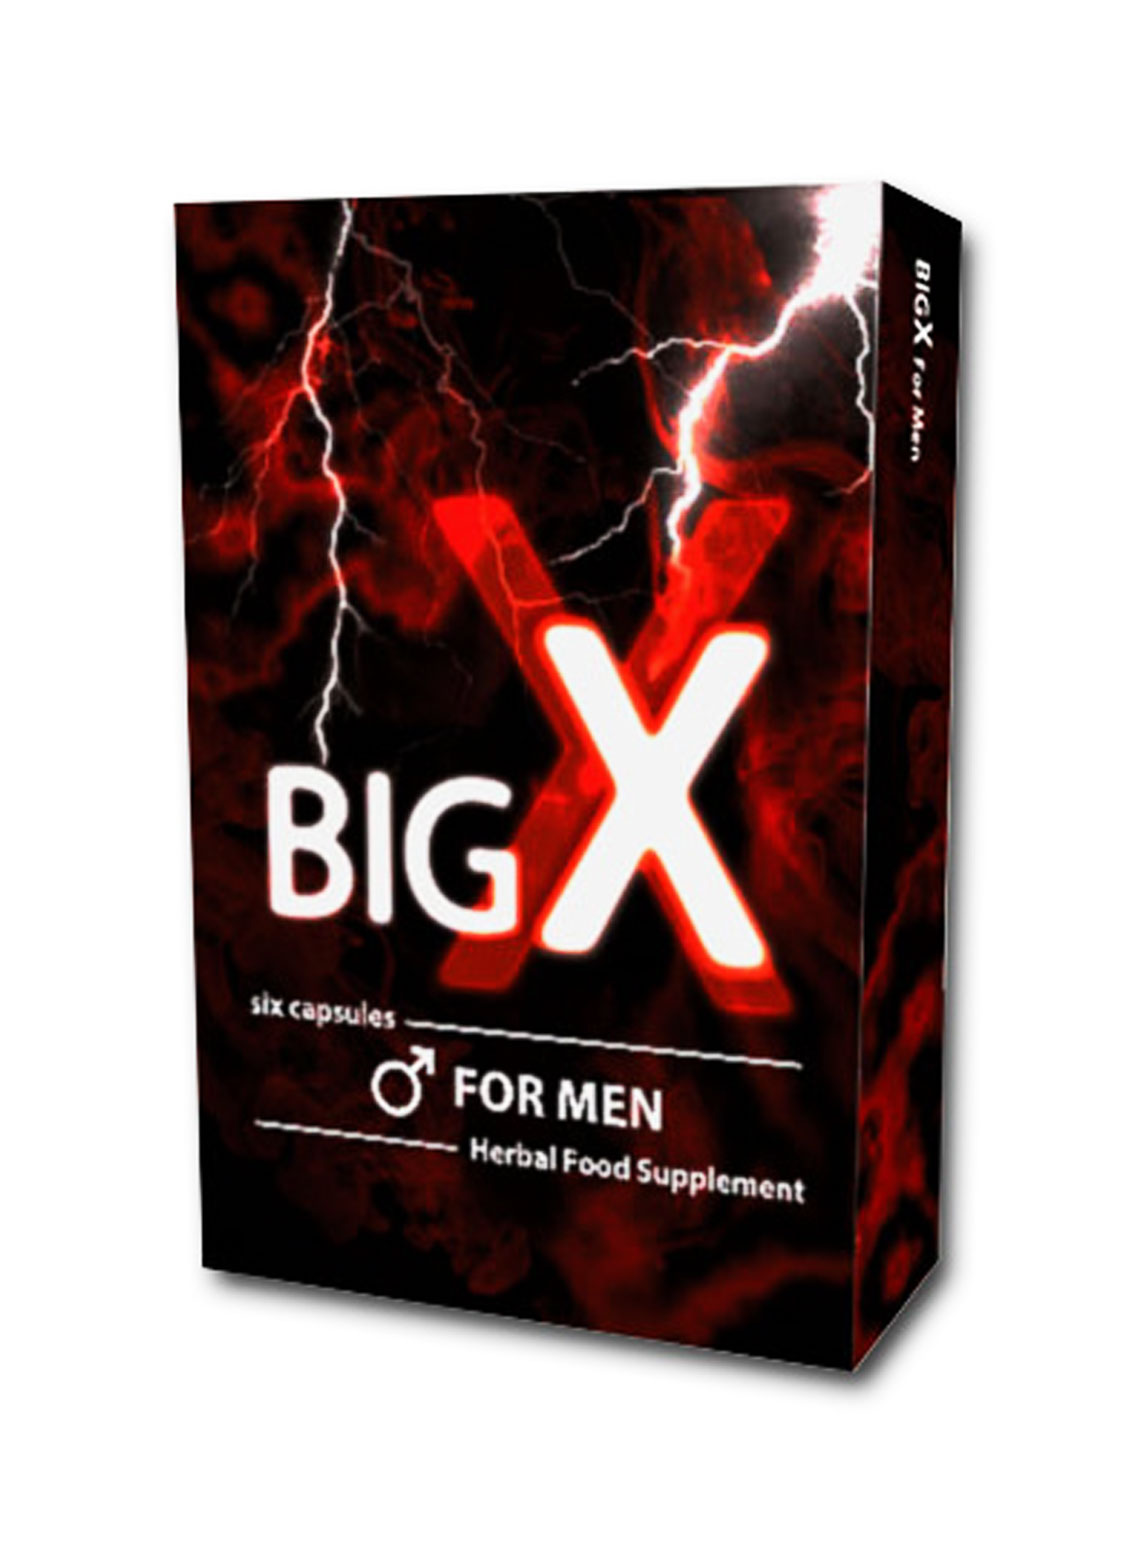 BigX For Men (6 Caps)